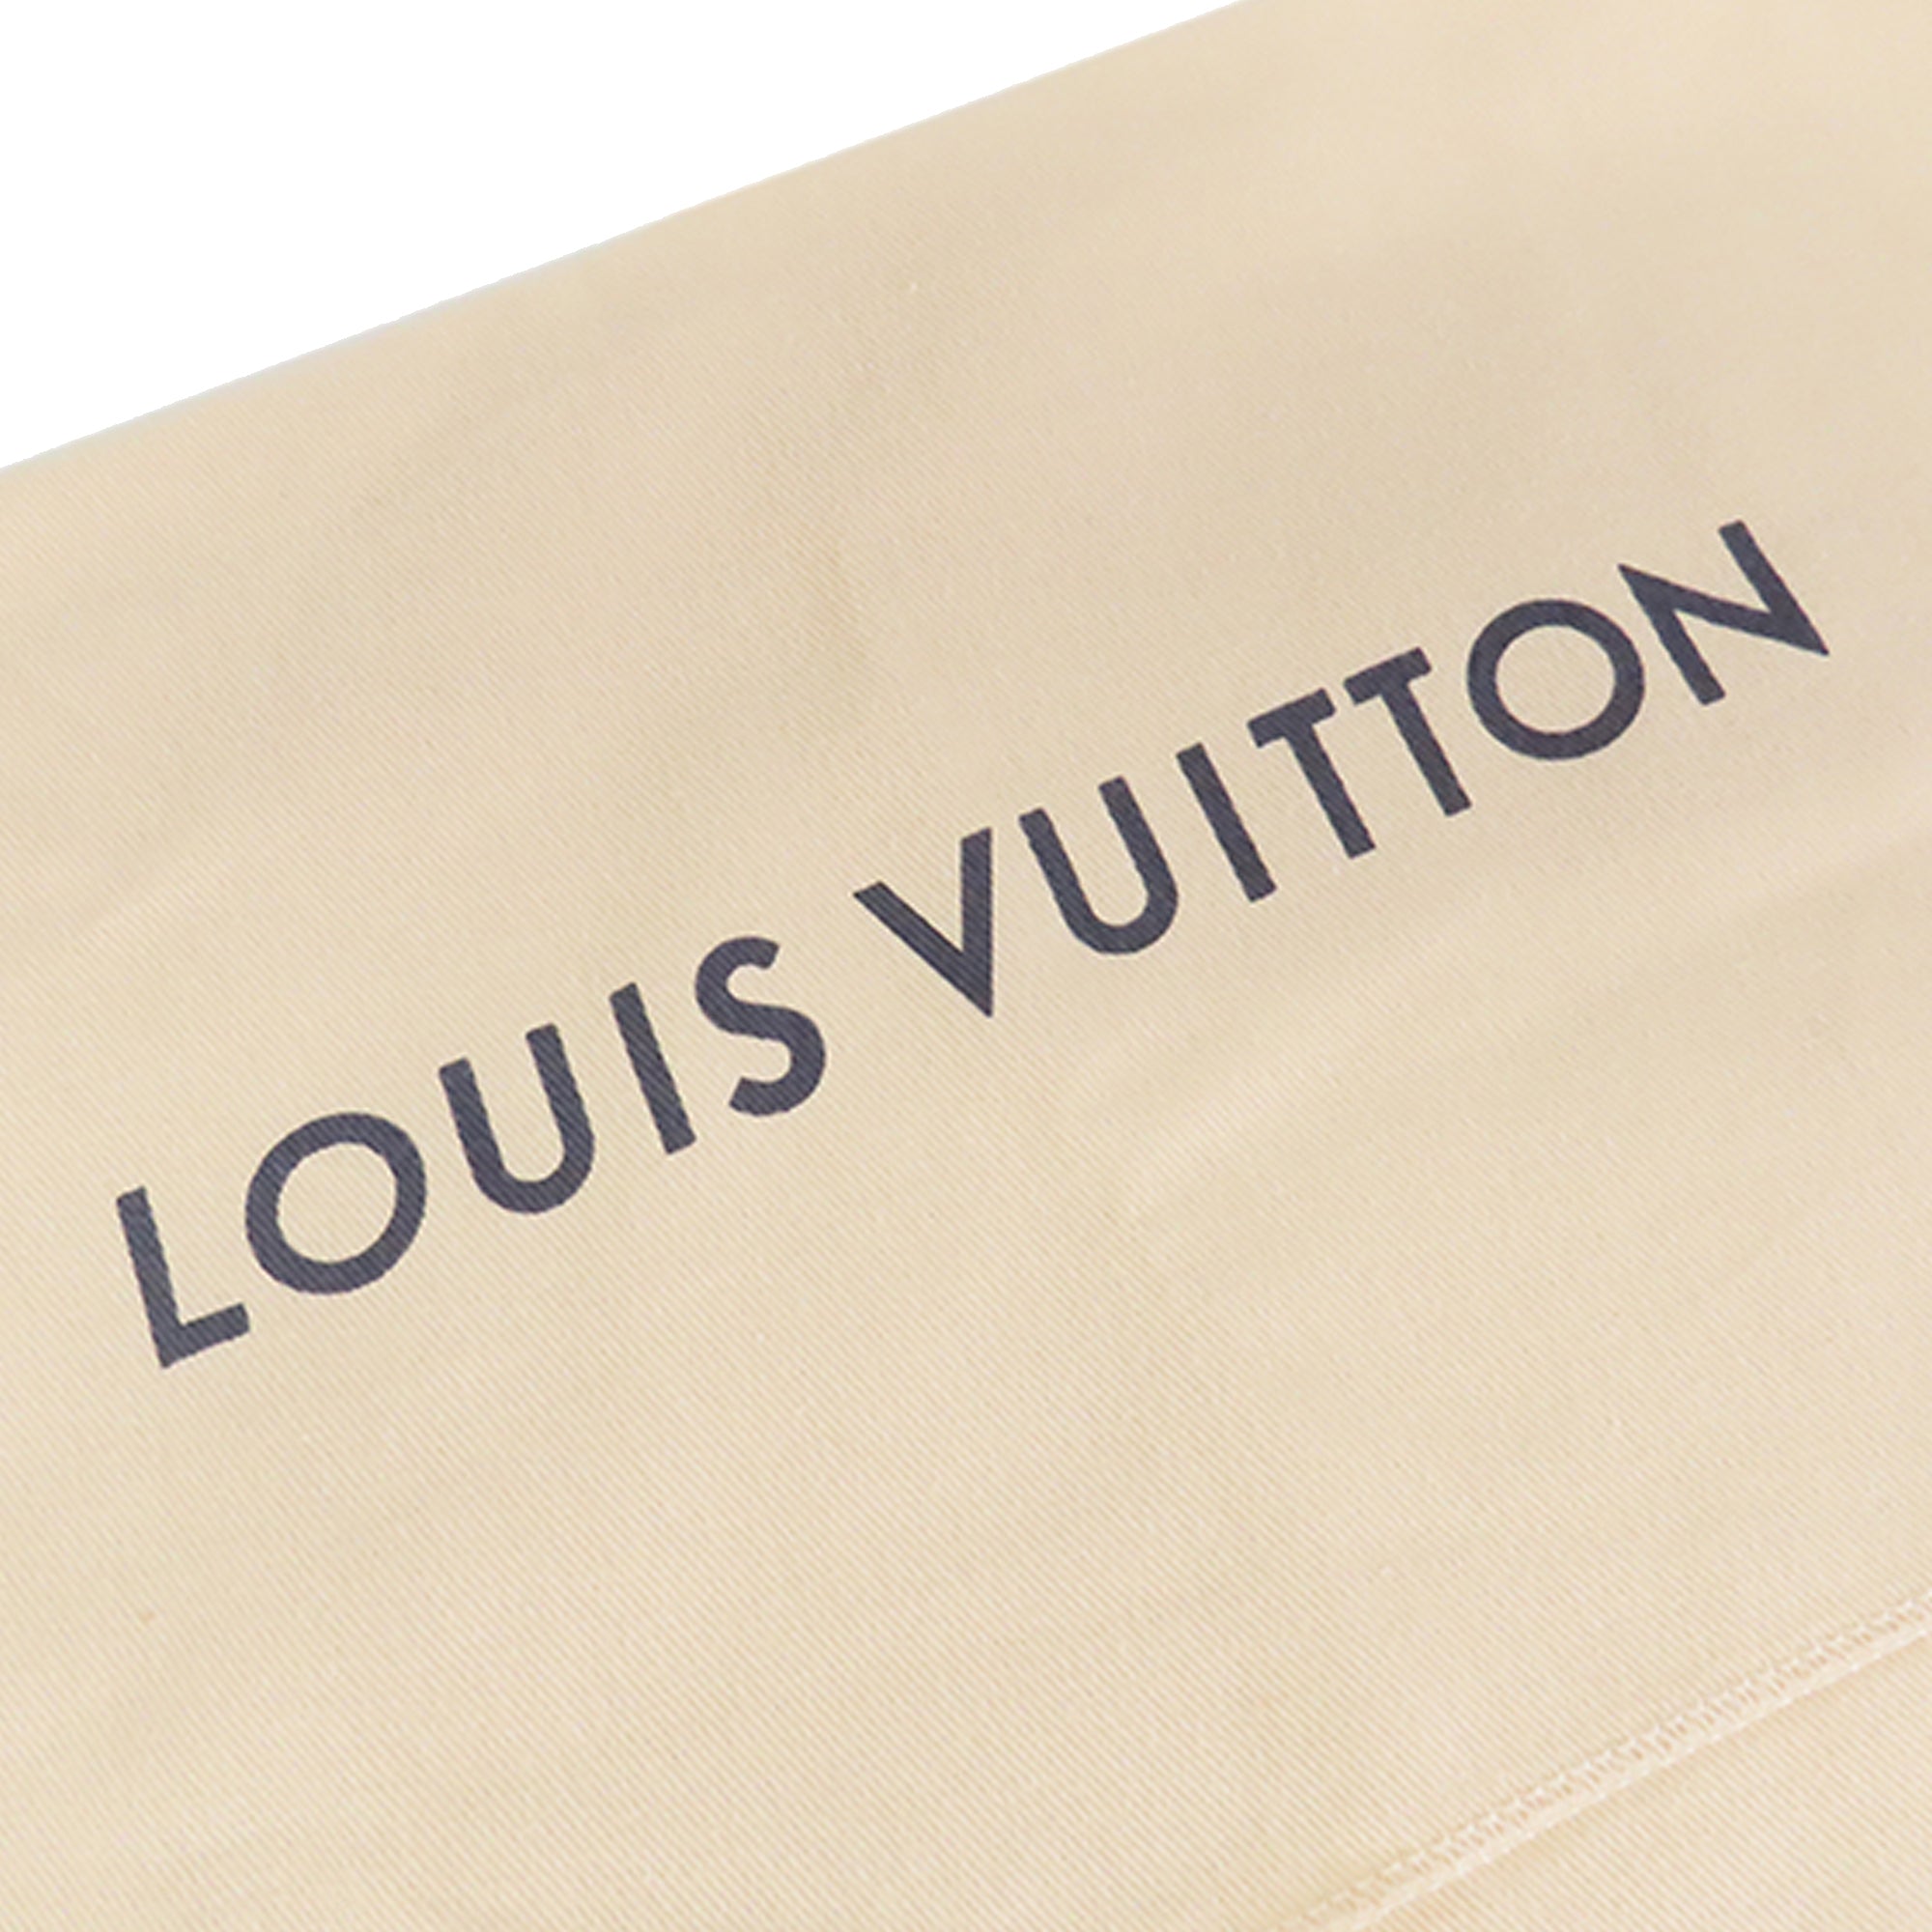 Black Louis Vuitton Monogram Eclipse Discovery Bum Bag